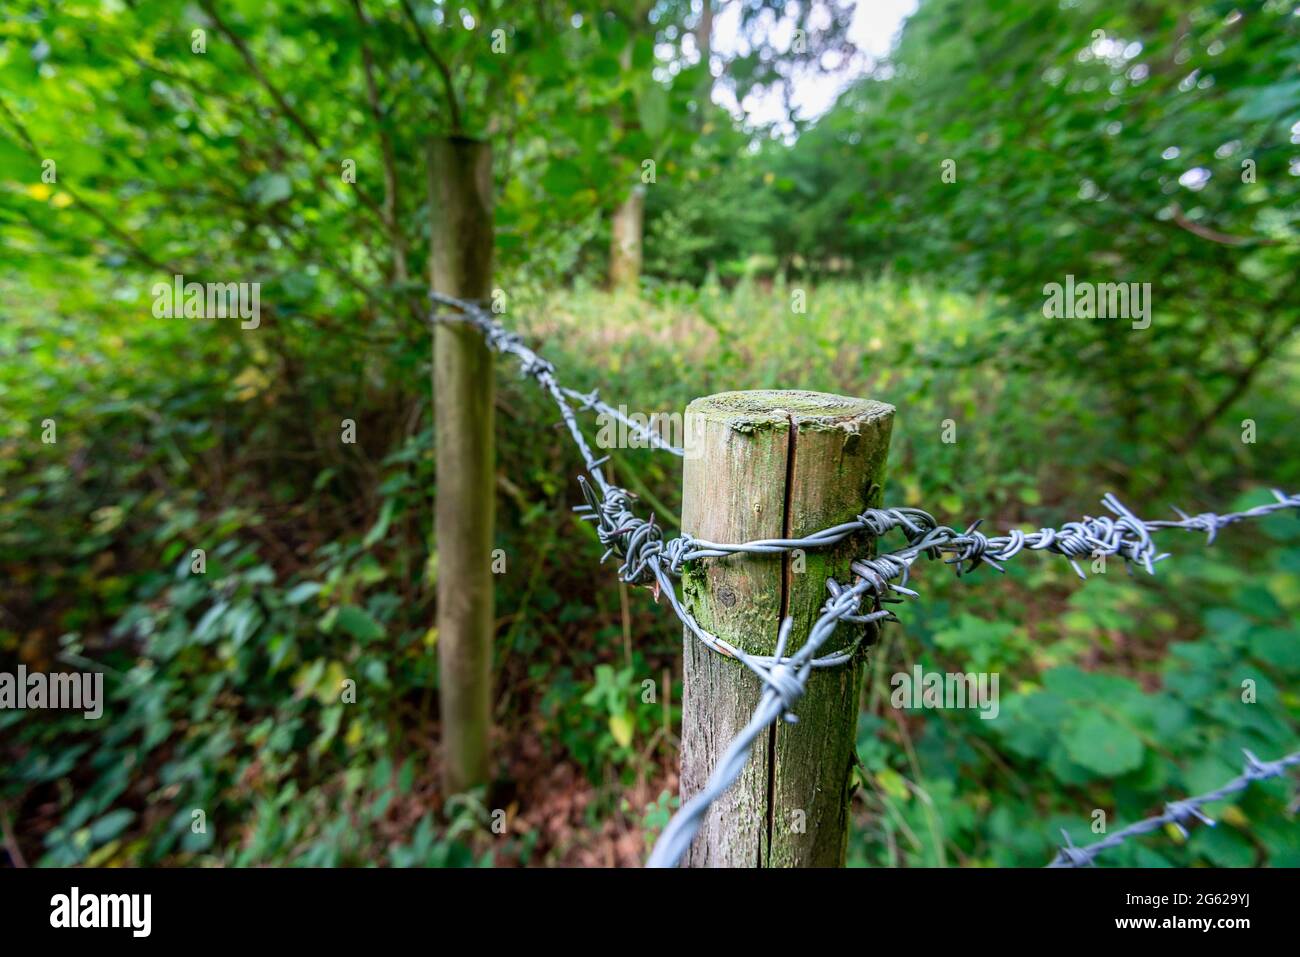 Wird verwendet, um verschiedene private Bereiche innerhalb der großen Waldfläche im Süden Englands zu trennen. Stockfoto